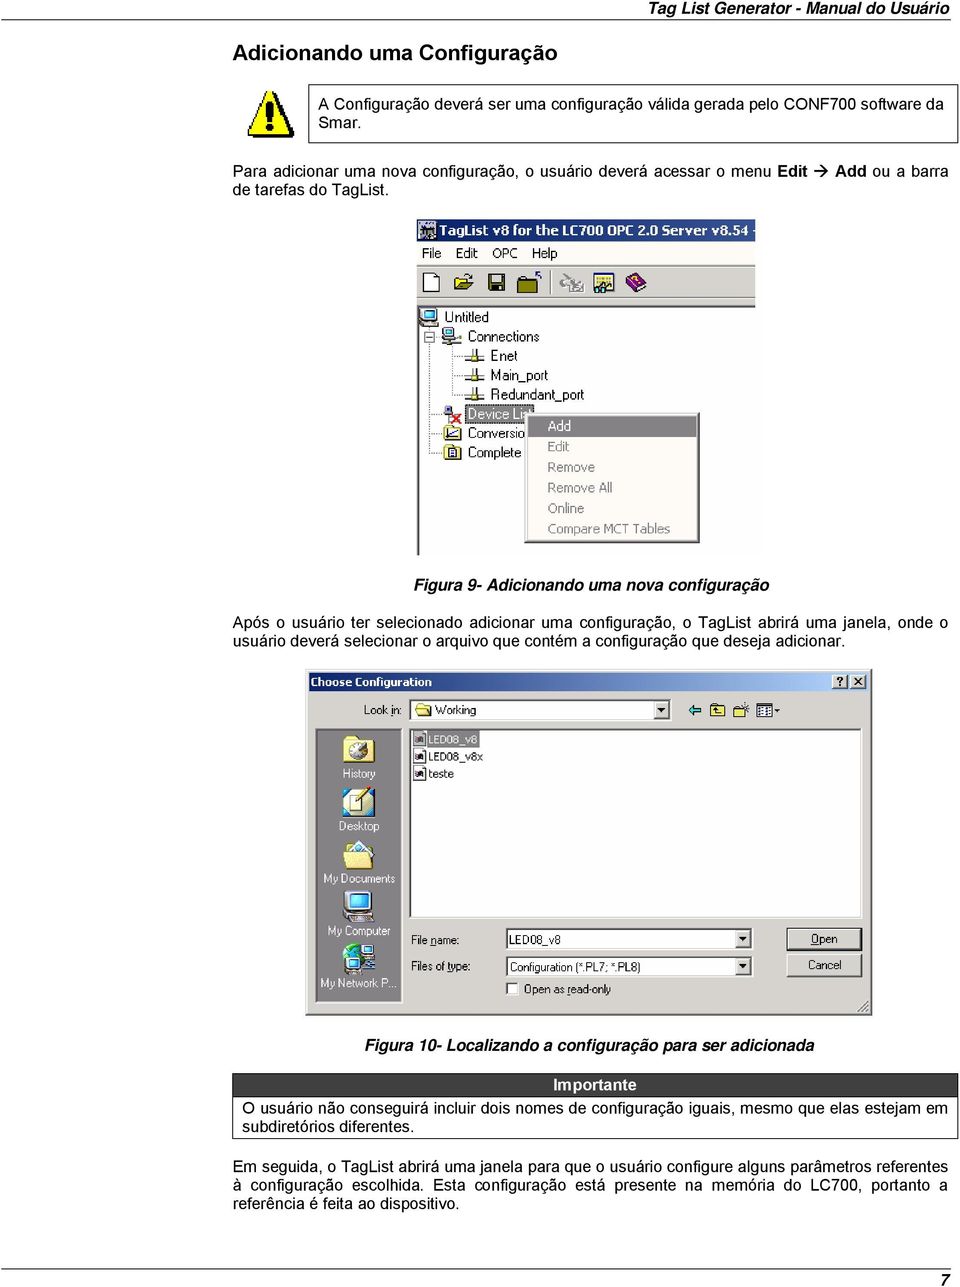 Figura 9- Adicionando uma nova configuração Após o usuário ter selecionado adicionar uma configuração, o TagList abrirá uma janela, onde o usuário deverá selecionar o arquivo que contém a